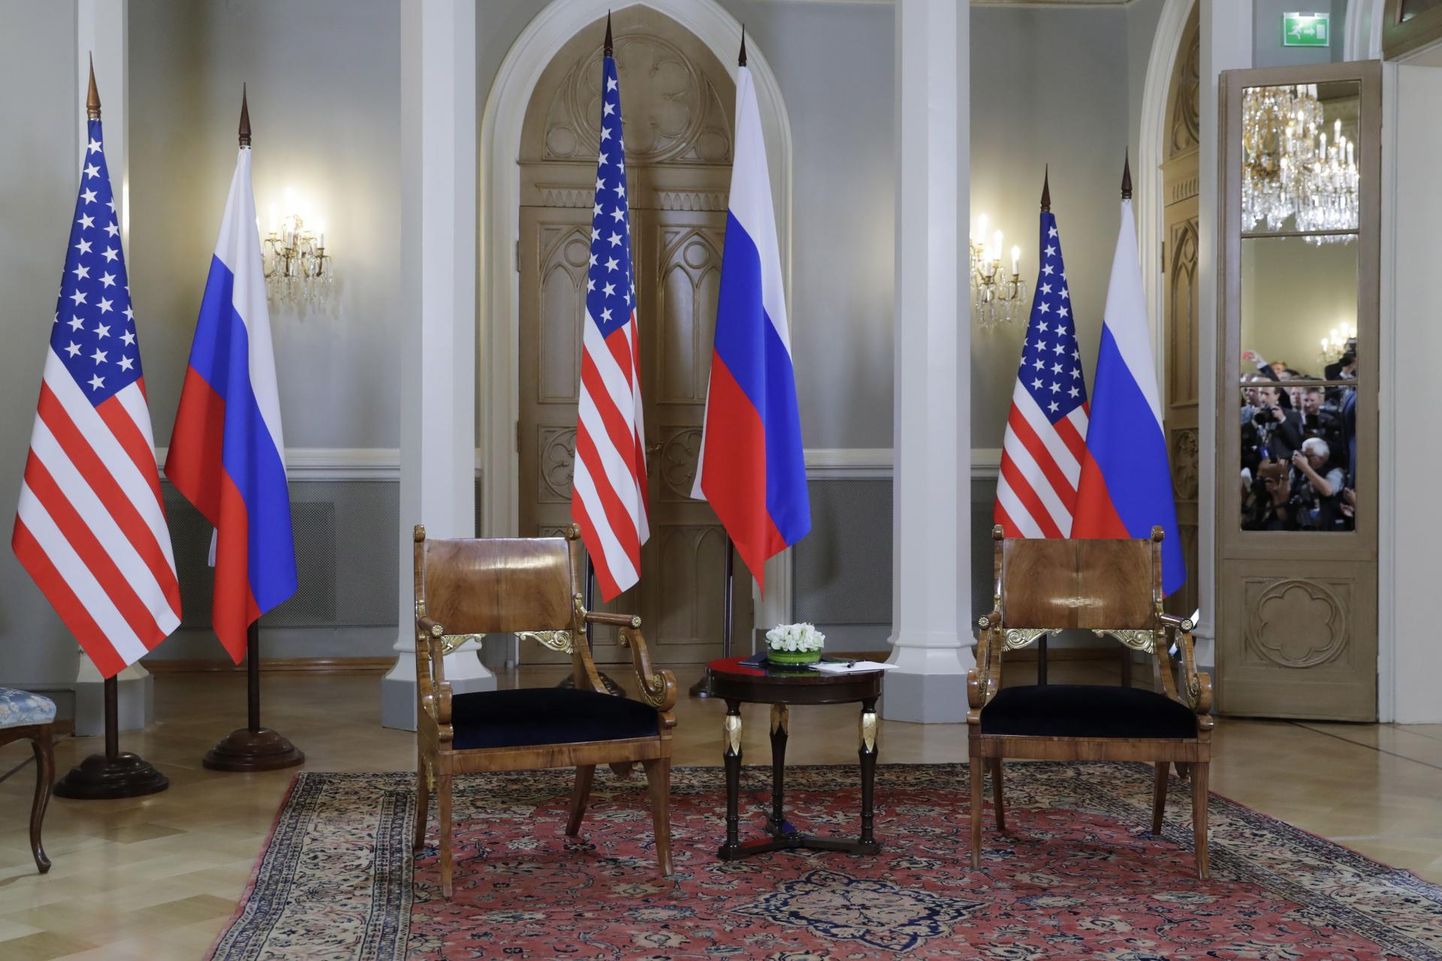 Ameerika Ühendriikide ja Venemaa riigilipud Donald Trumpi ja Vladimir Putini tippkohtumisel Helsingis.